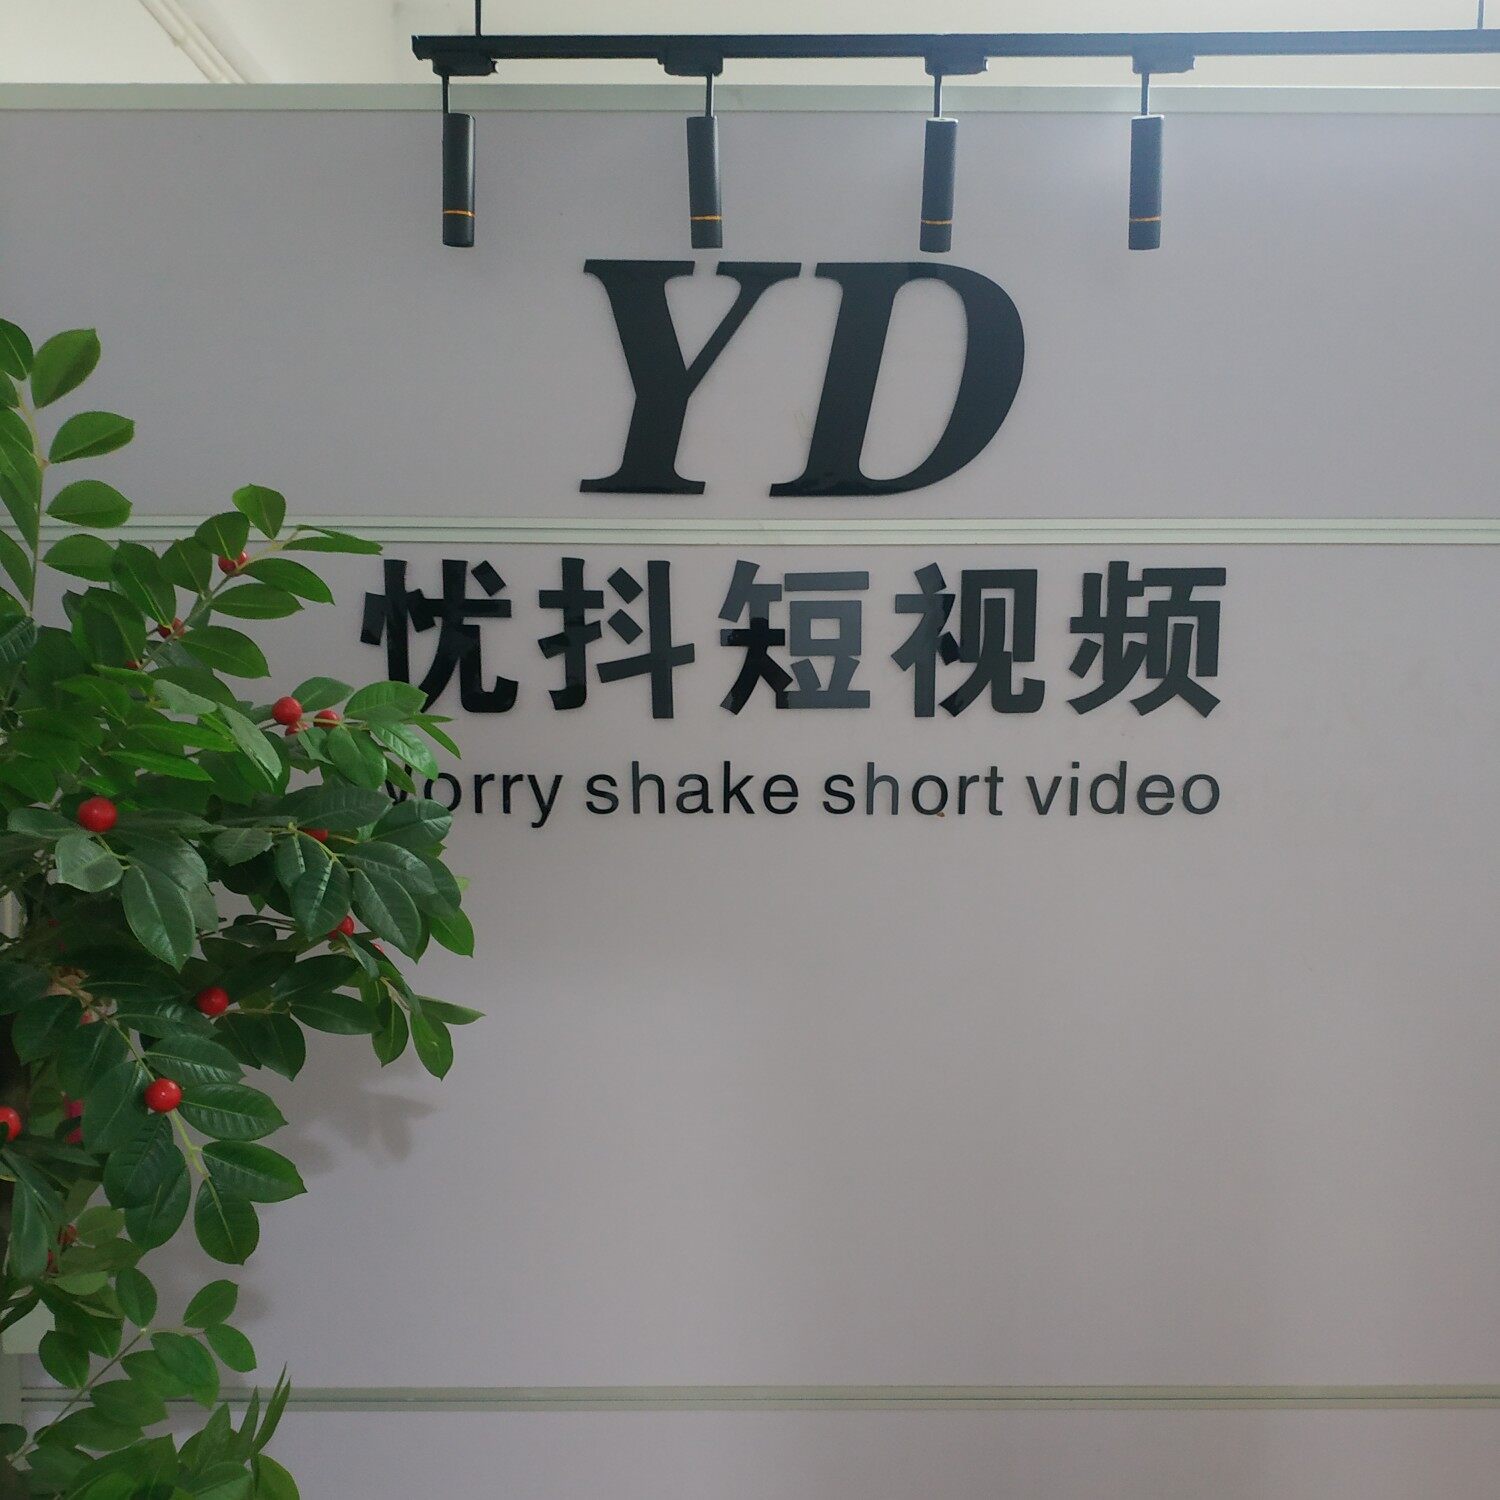 杭州忧抖短视频有限责任公司logo